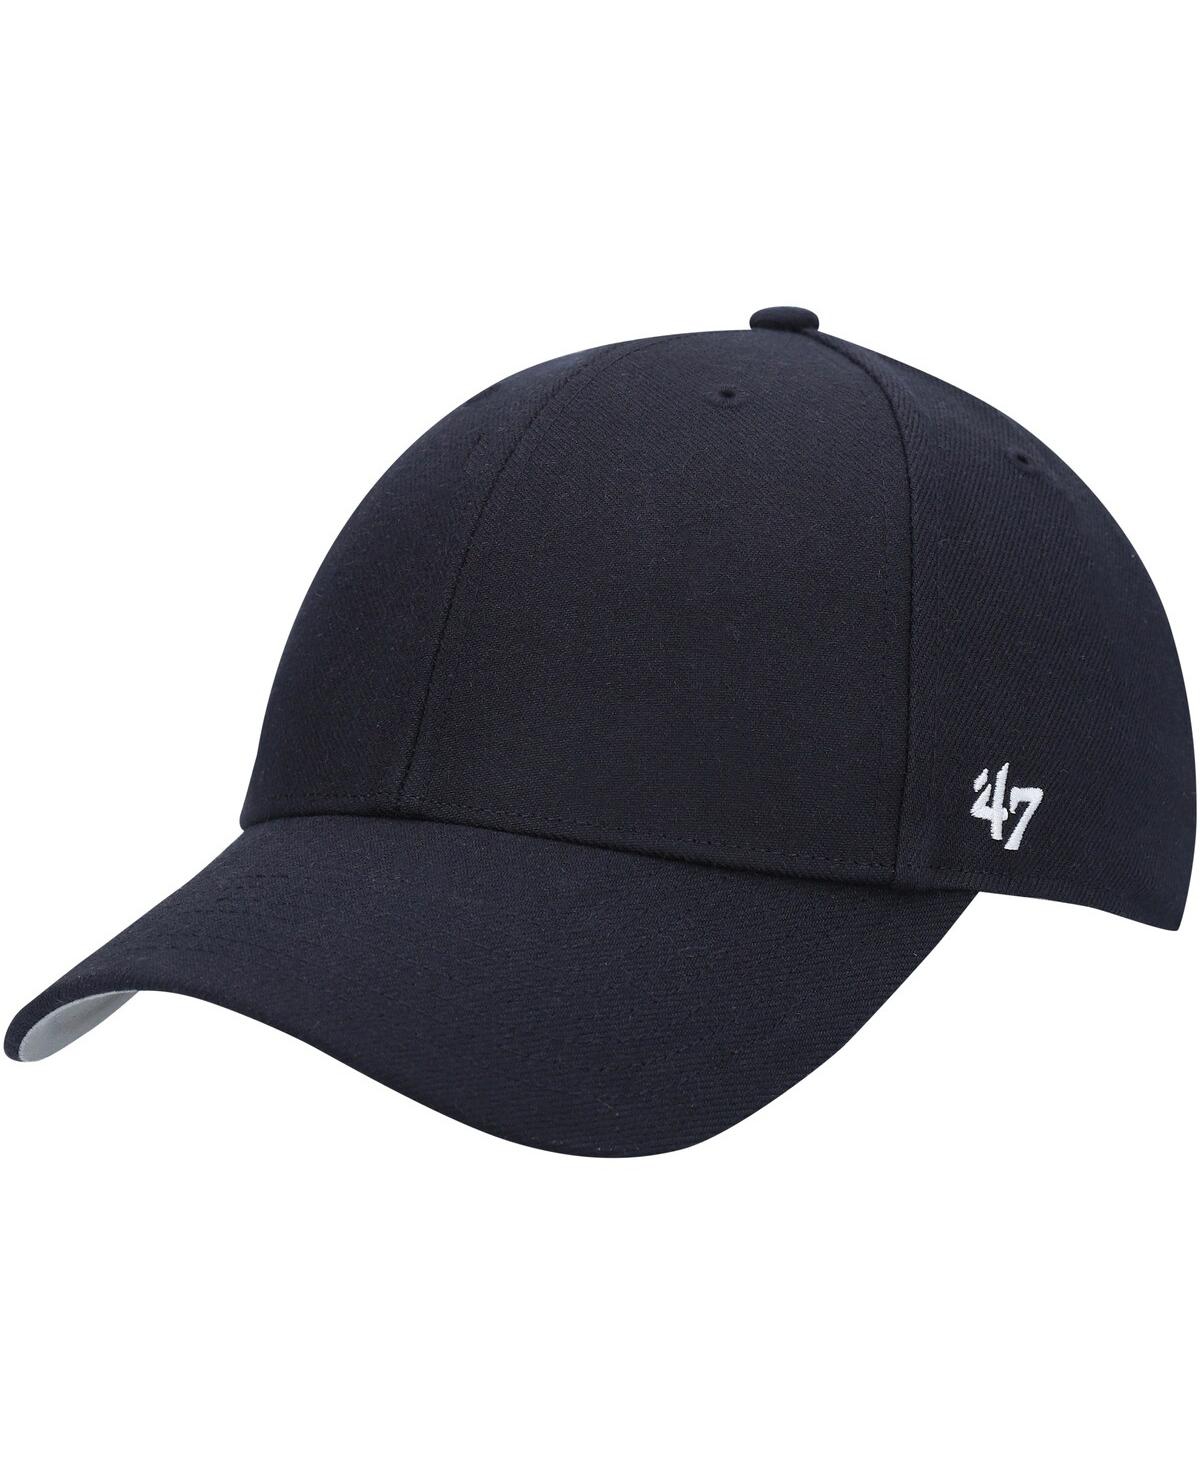 47 Brand Men's '47 Navy Mvp Adjustable Hat